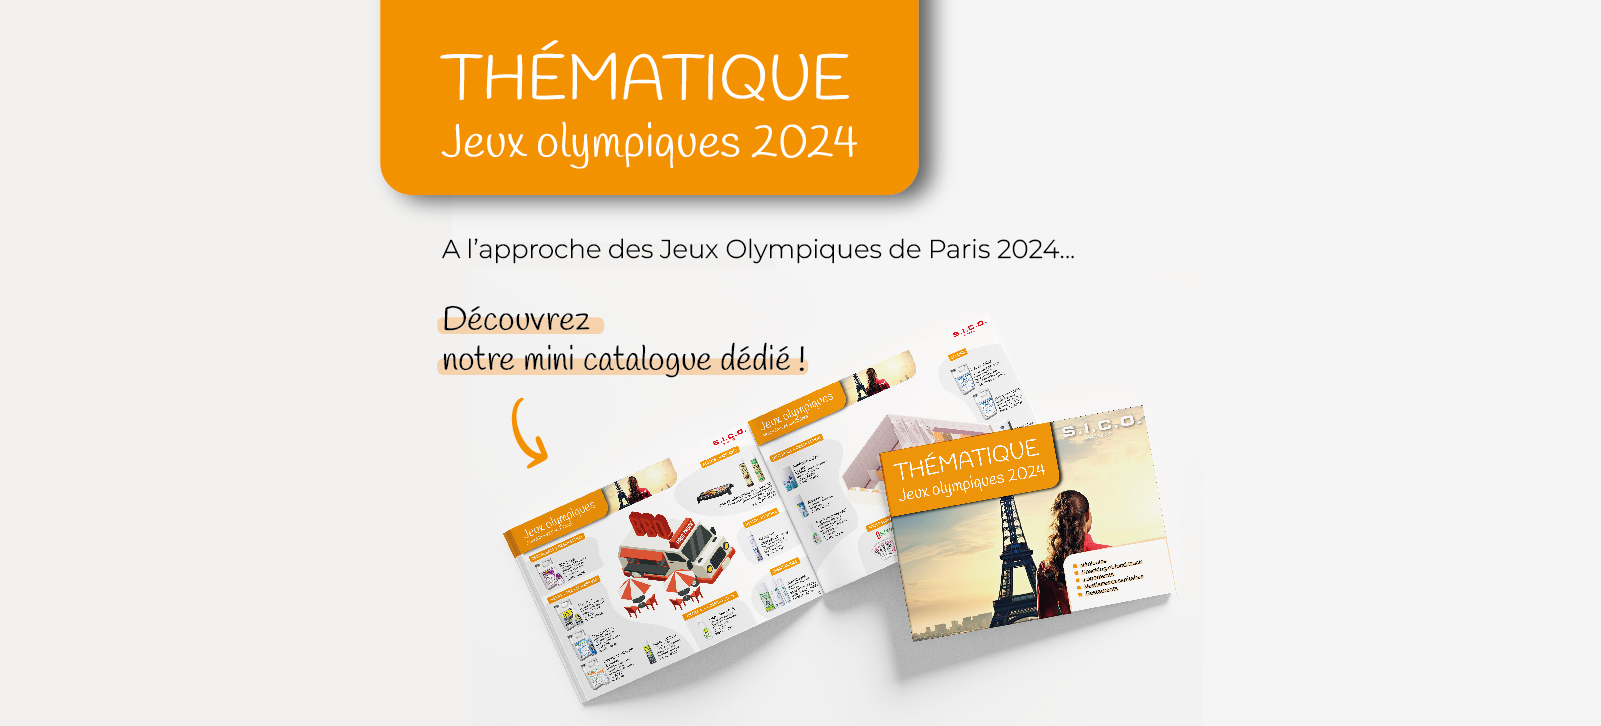 Découvrez notre catalogue spécial Jeux Olympiques 2024